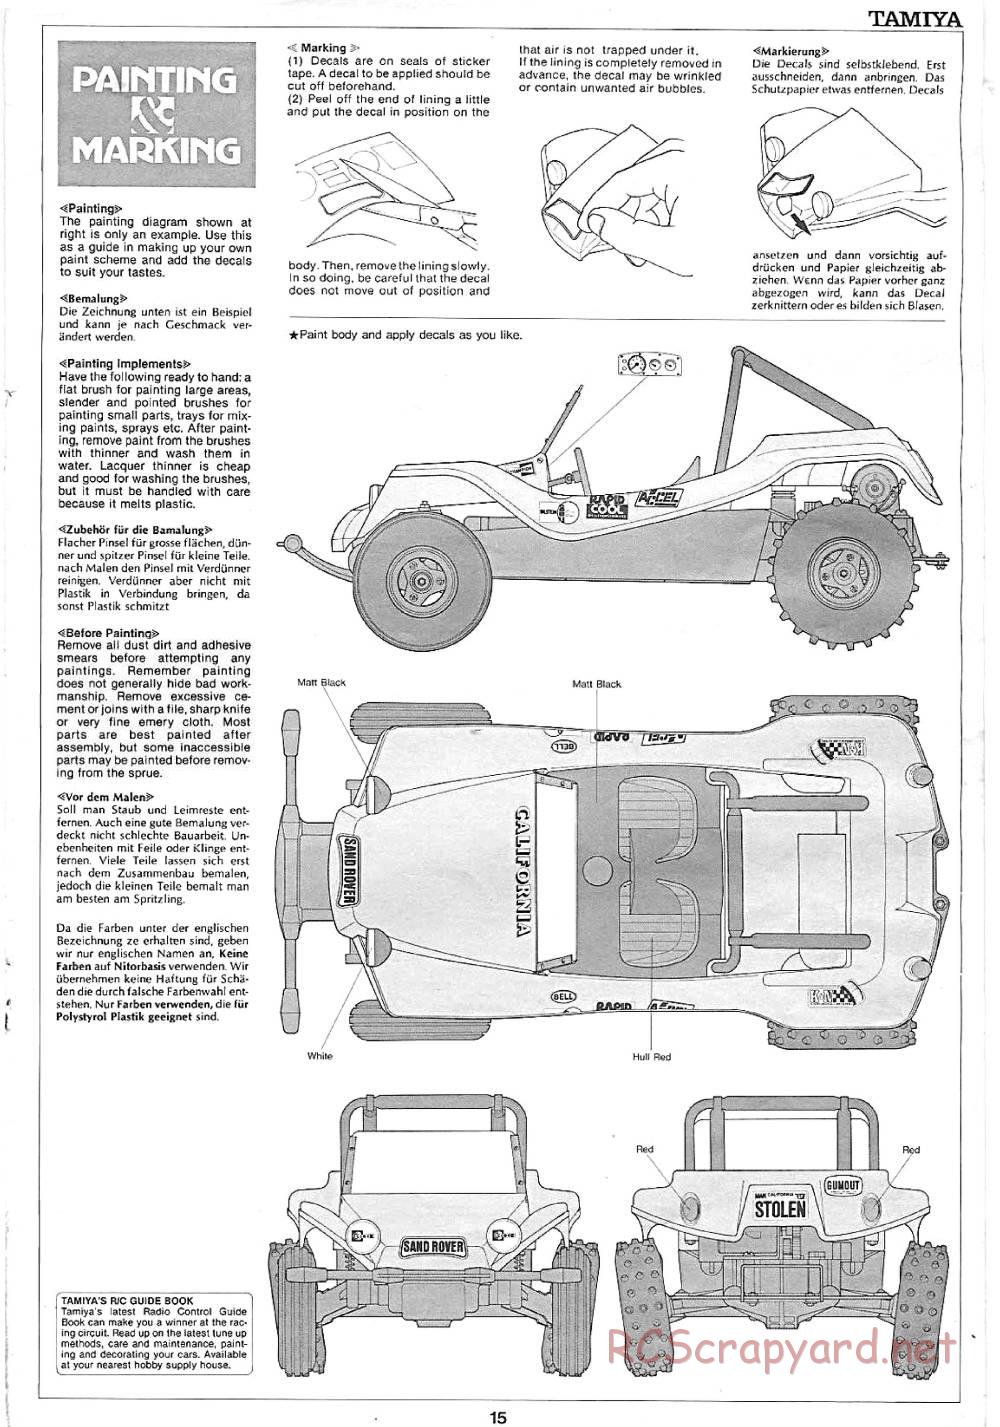 Tamiya - Sand Rover - 58024 - Manual - Page 15